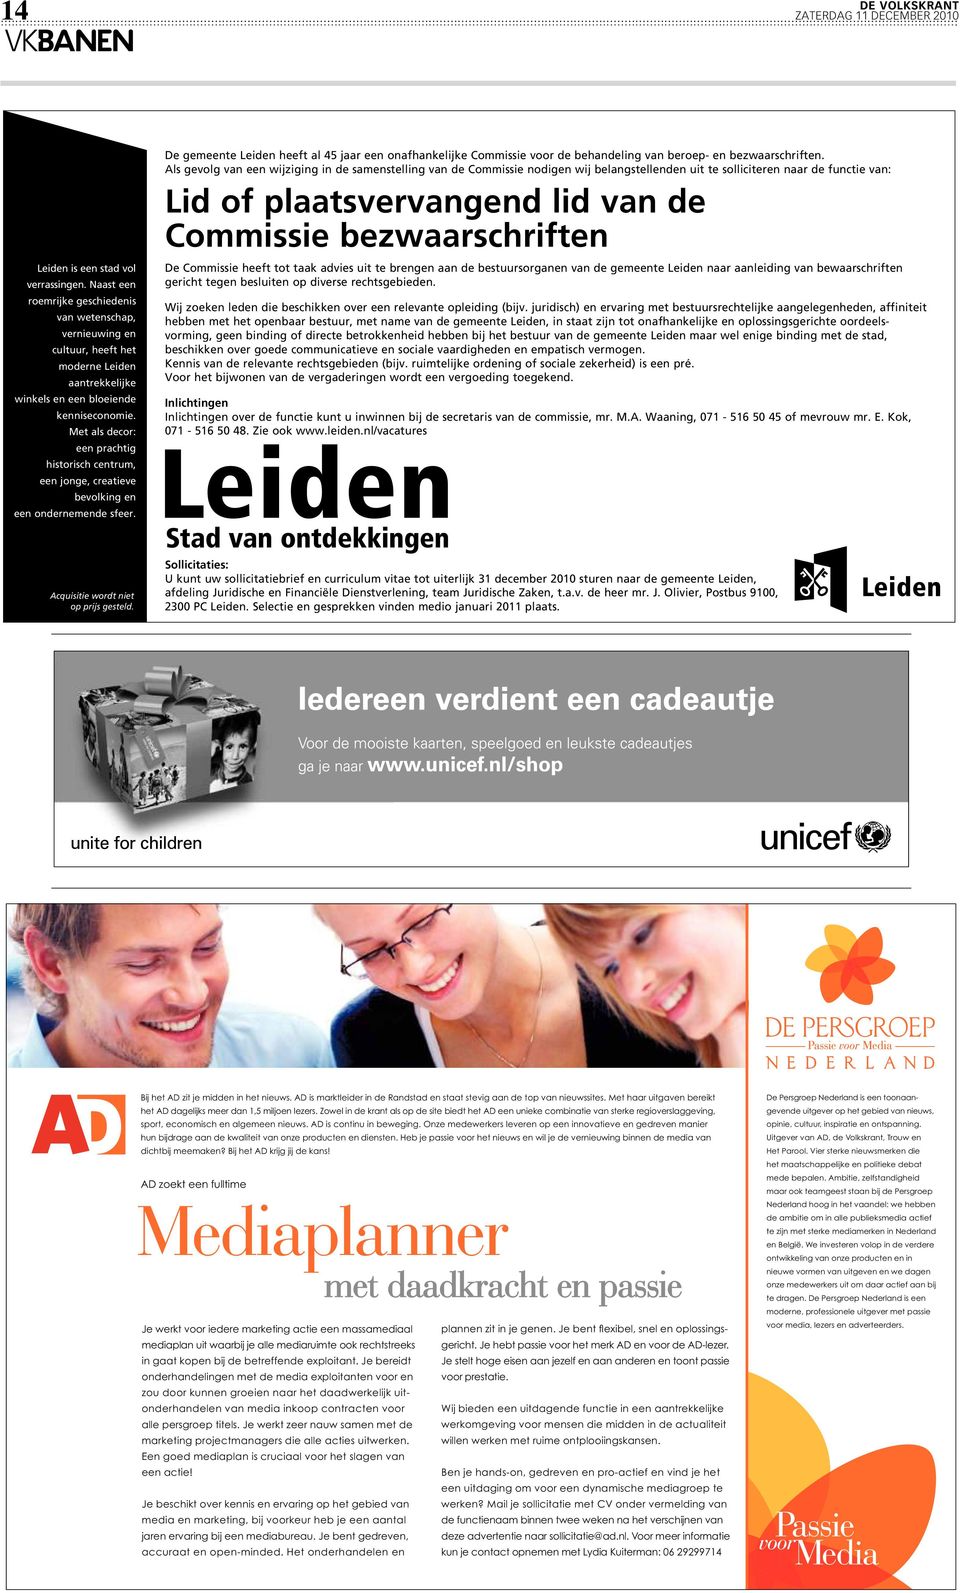 De gemeente Leiden heeft al 45 jaar een onafhankelijke Commissie voor de behandeling van beroep- en bezwaarschriften.